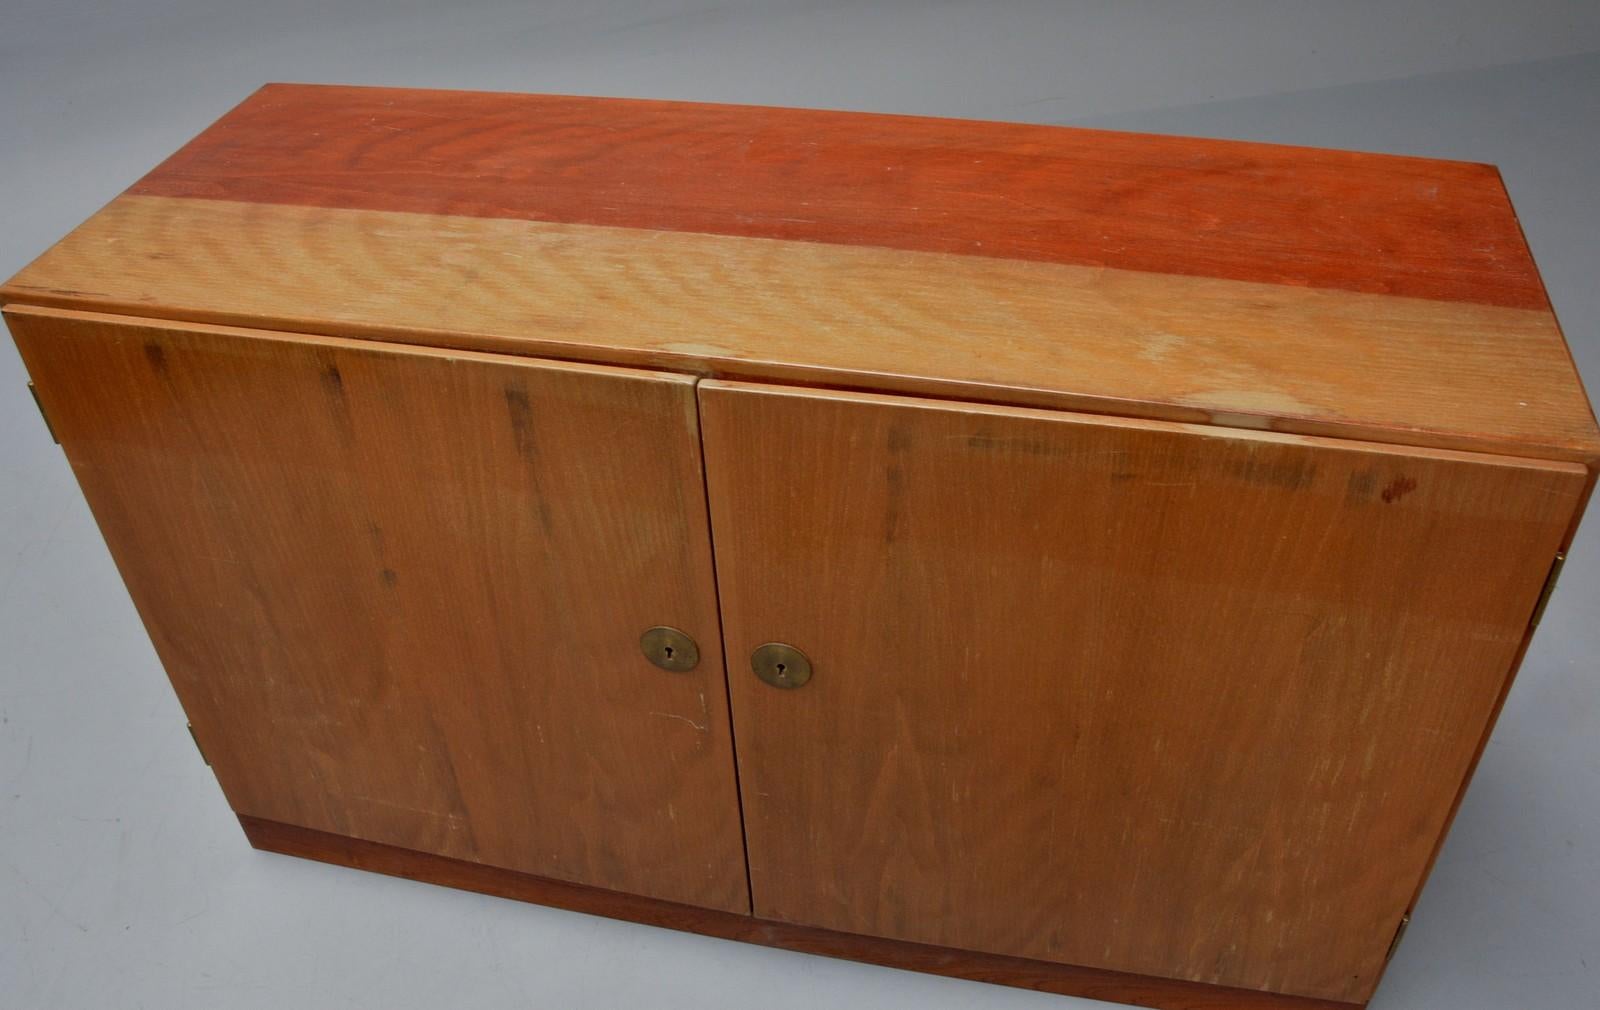 Rare cabinet Børge Mogensen modèle A 232 produit par C.M. Madsen pour FDB, Danemark années 1950. Cette armoire est fabriquée en teck et possède deux portes laissant apparaître un intérieur avec des étagères et des plateaux coulissants en bois